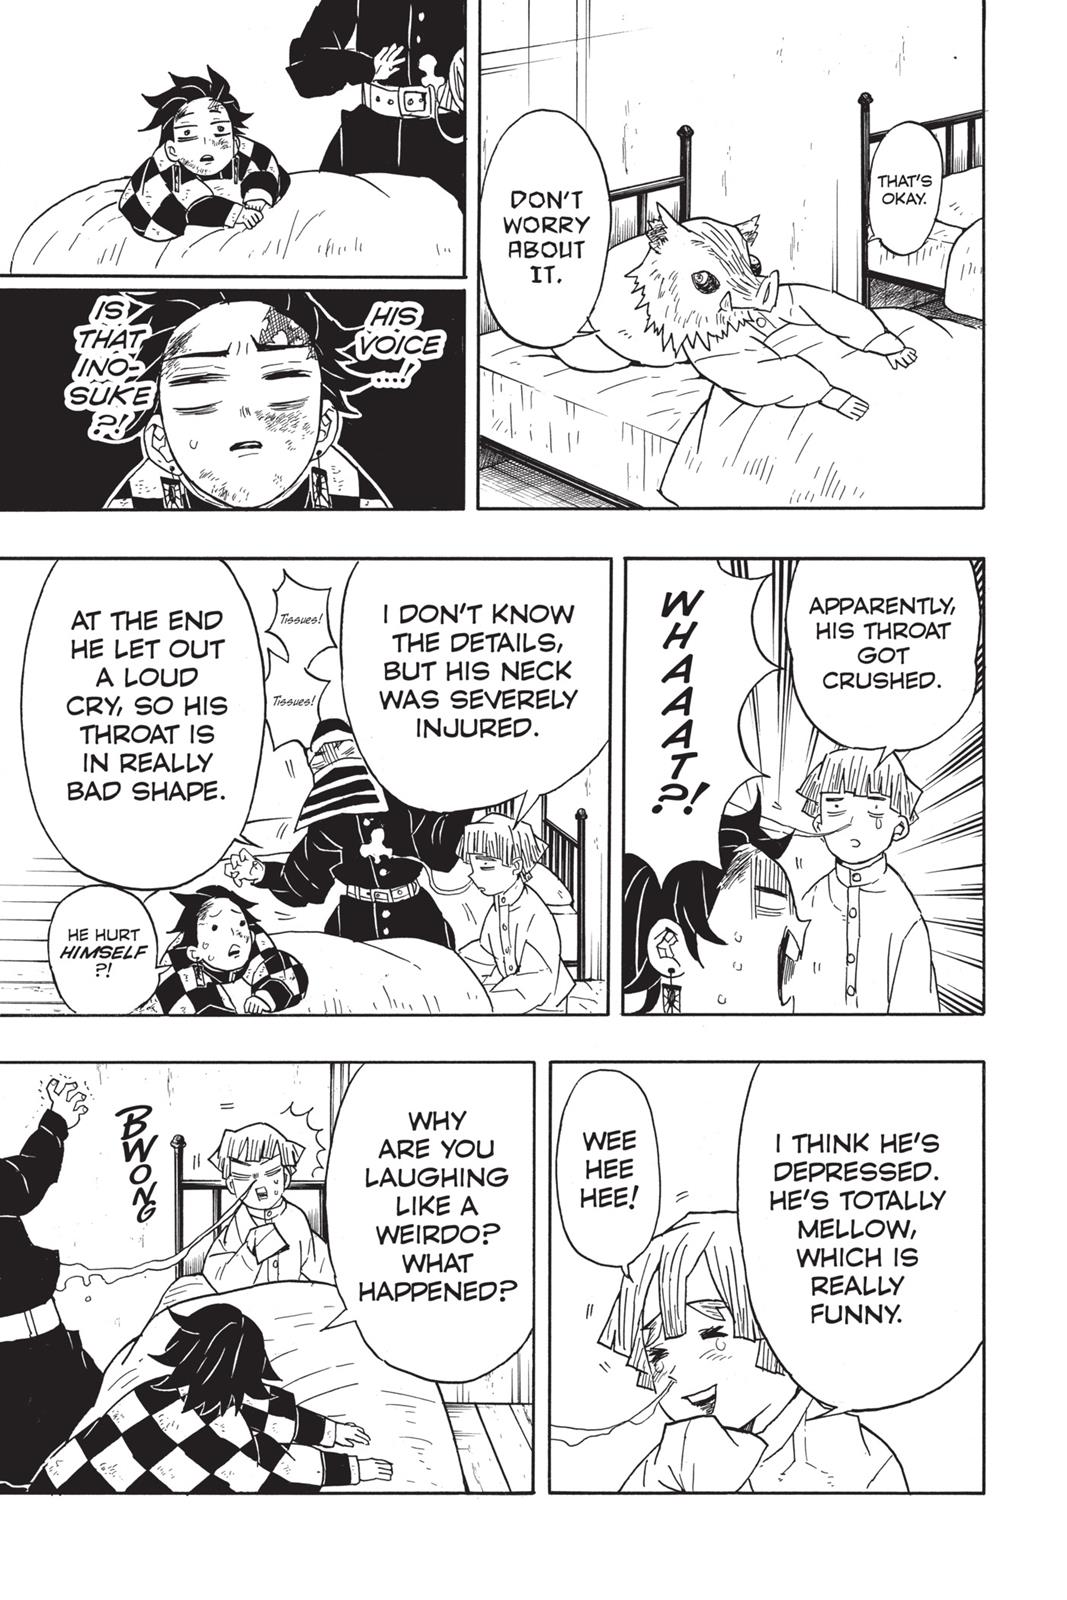 Demon Slayer Manga Manga Chapter - 48 - image 11